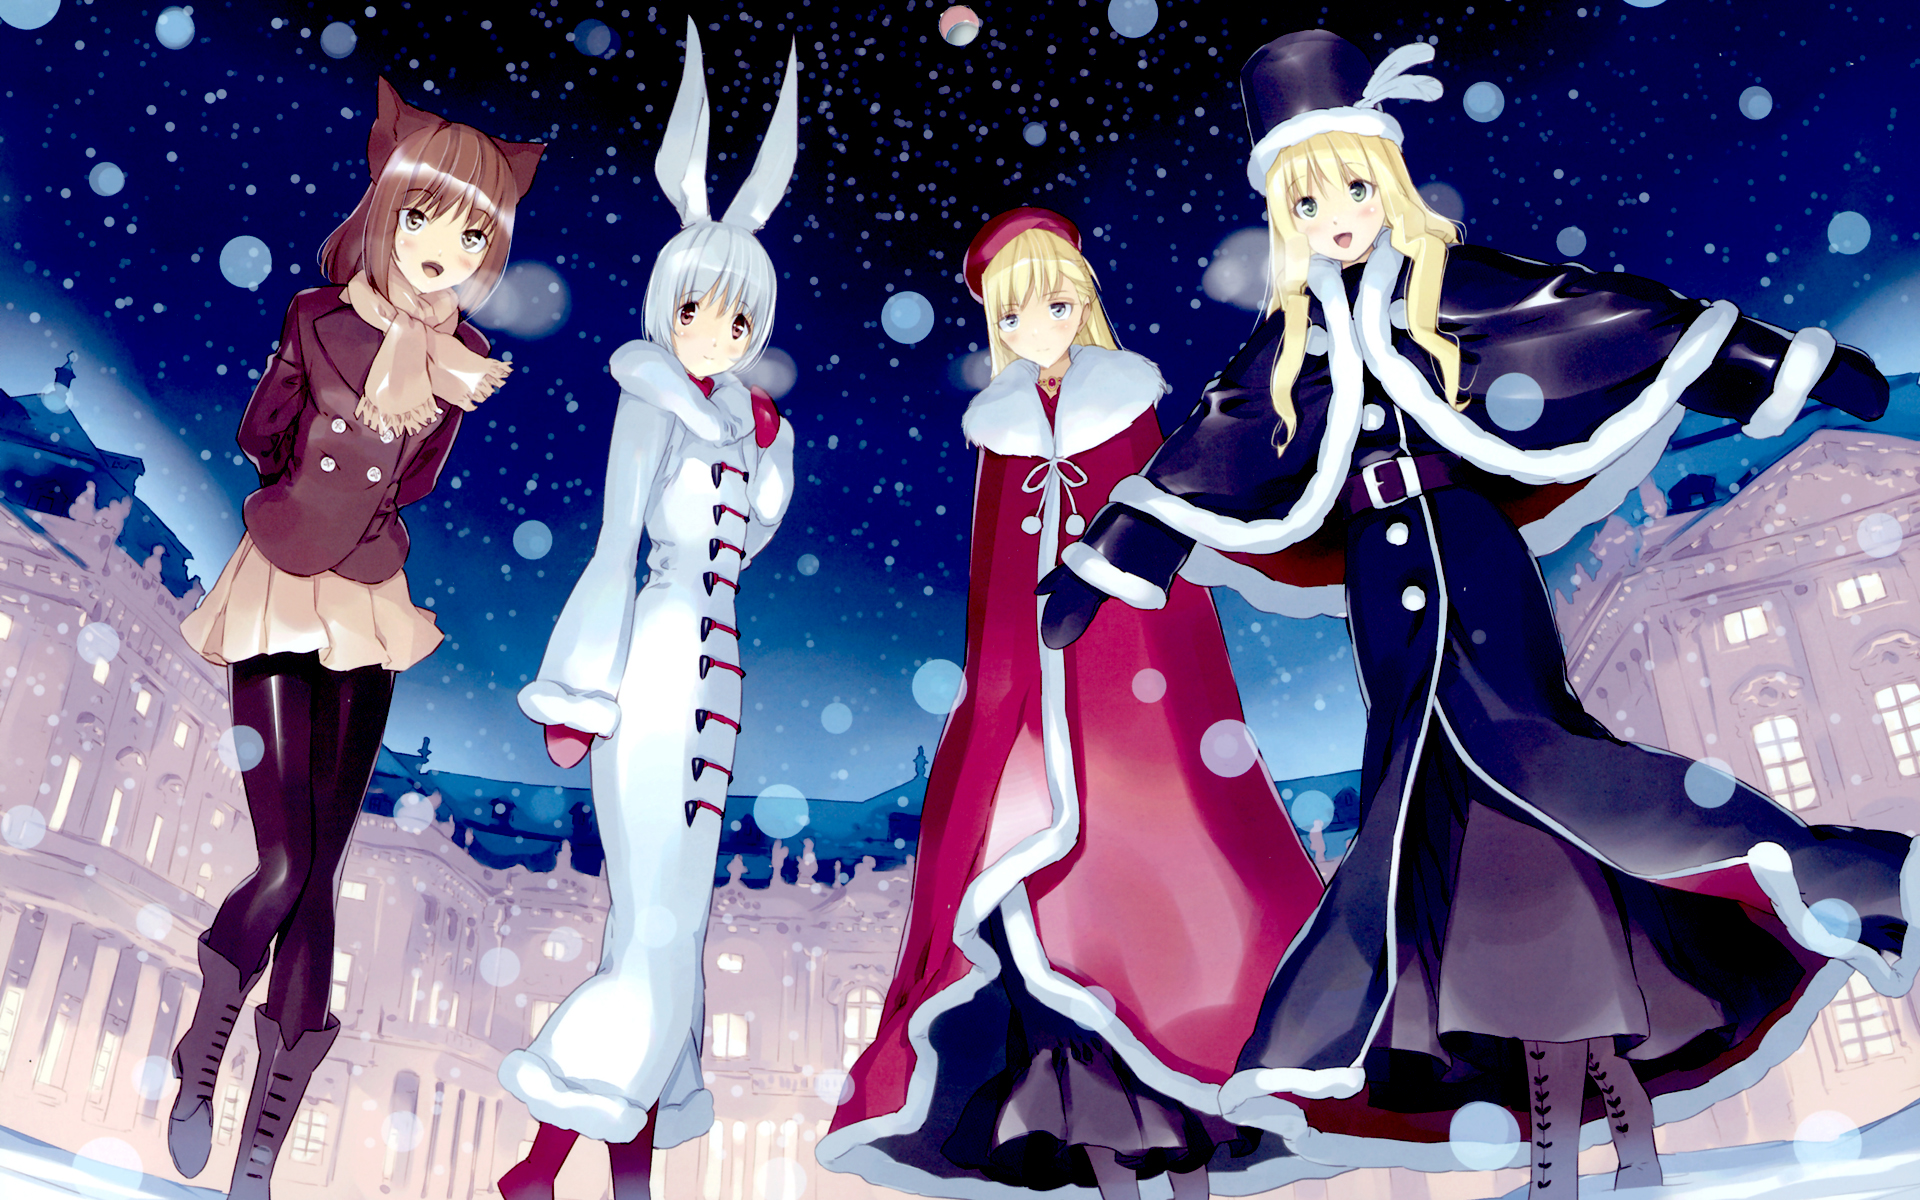 Anime Winter Girls Widescreen Wallpaper. Wide Wallpaper.NET